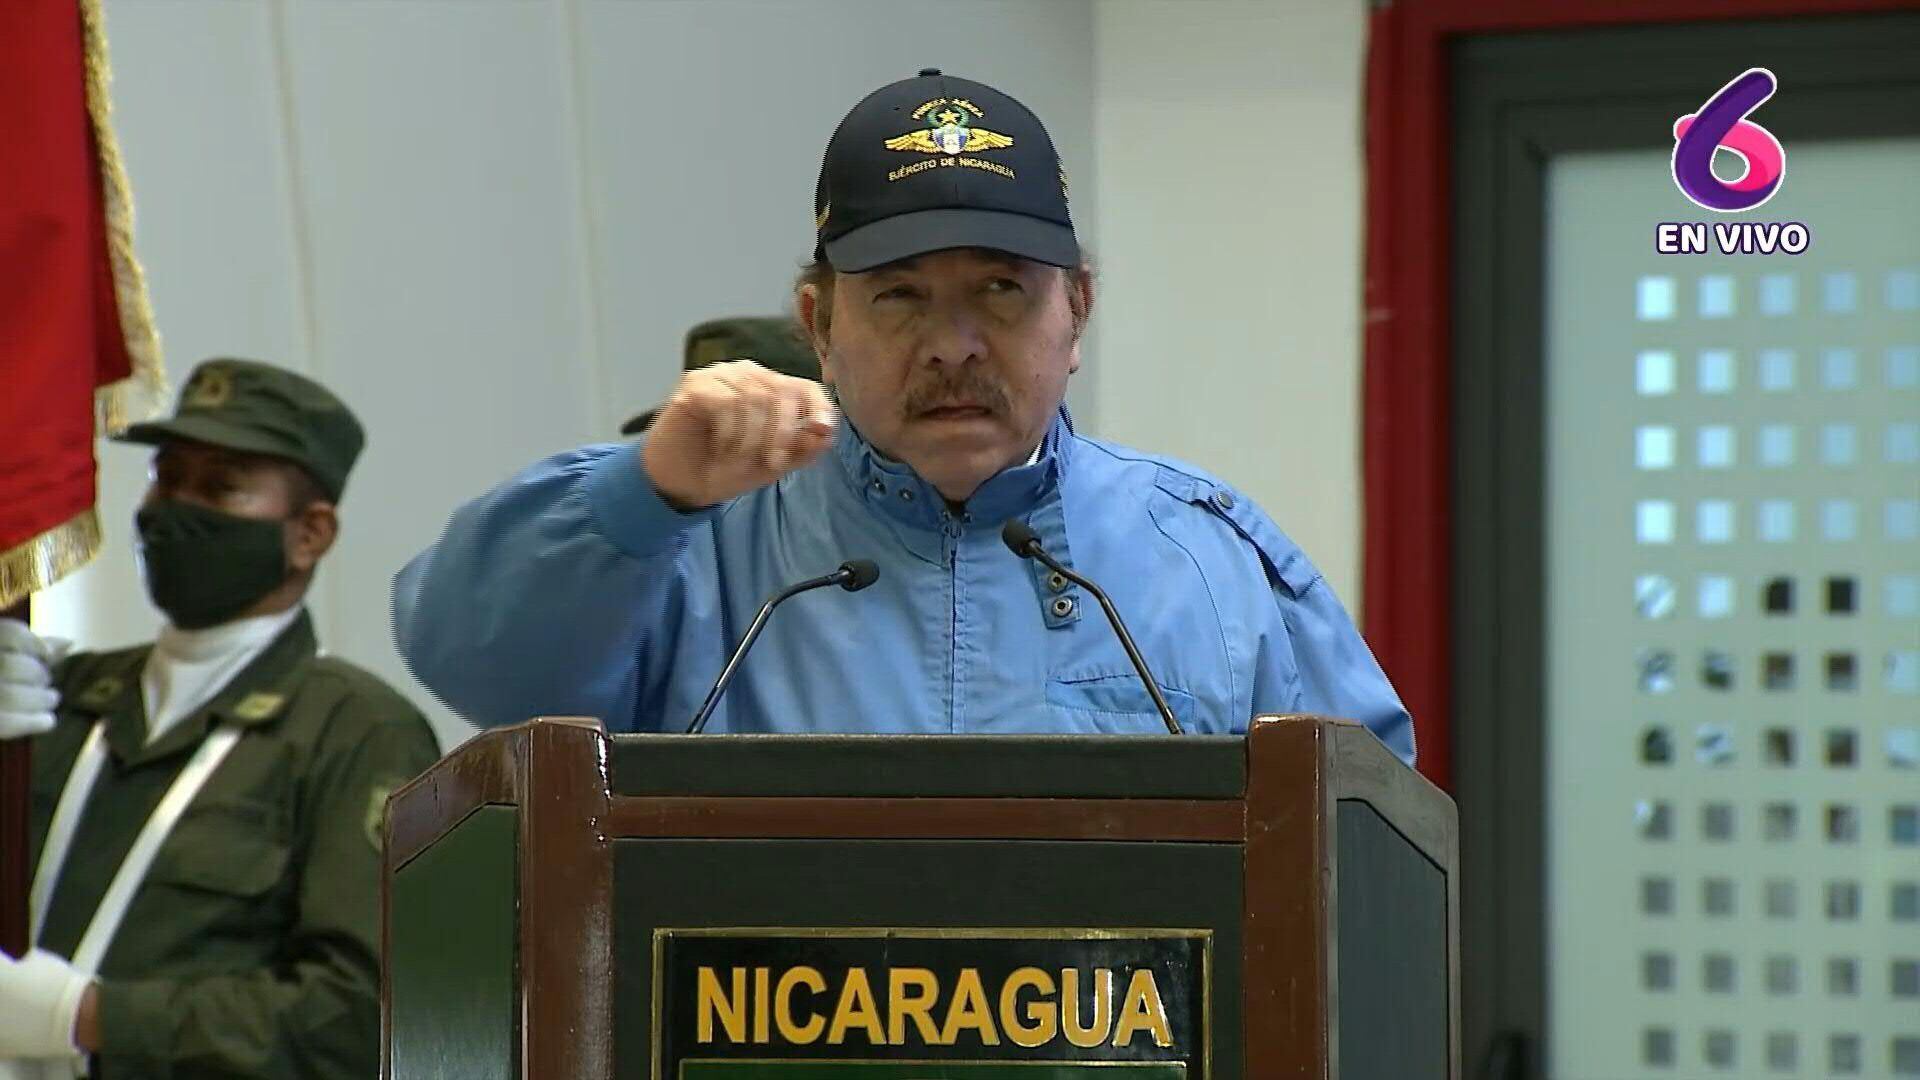 El dictador Daniel Ortega persigue y amenaza a los obispos nicaragüenses que intentaron mediar para alcanzar un diálogo nacional en medio de la crisis que vive el país